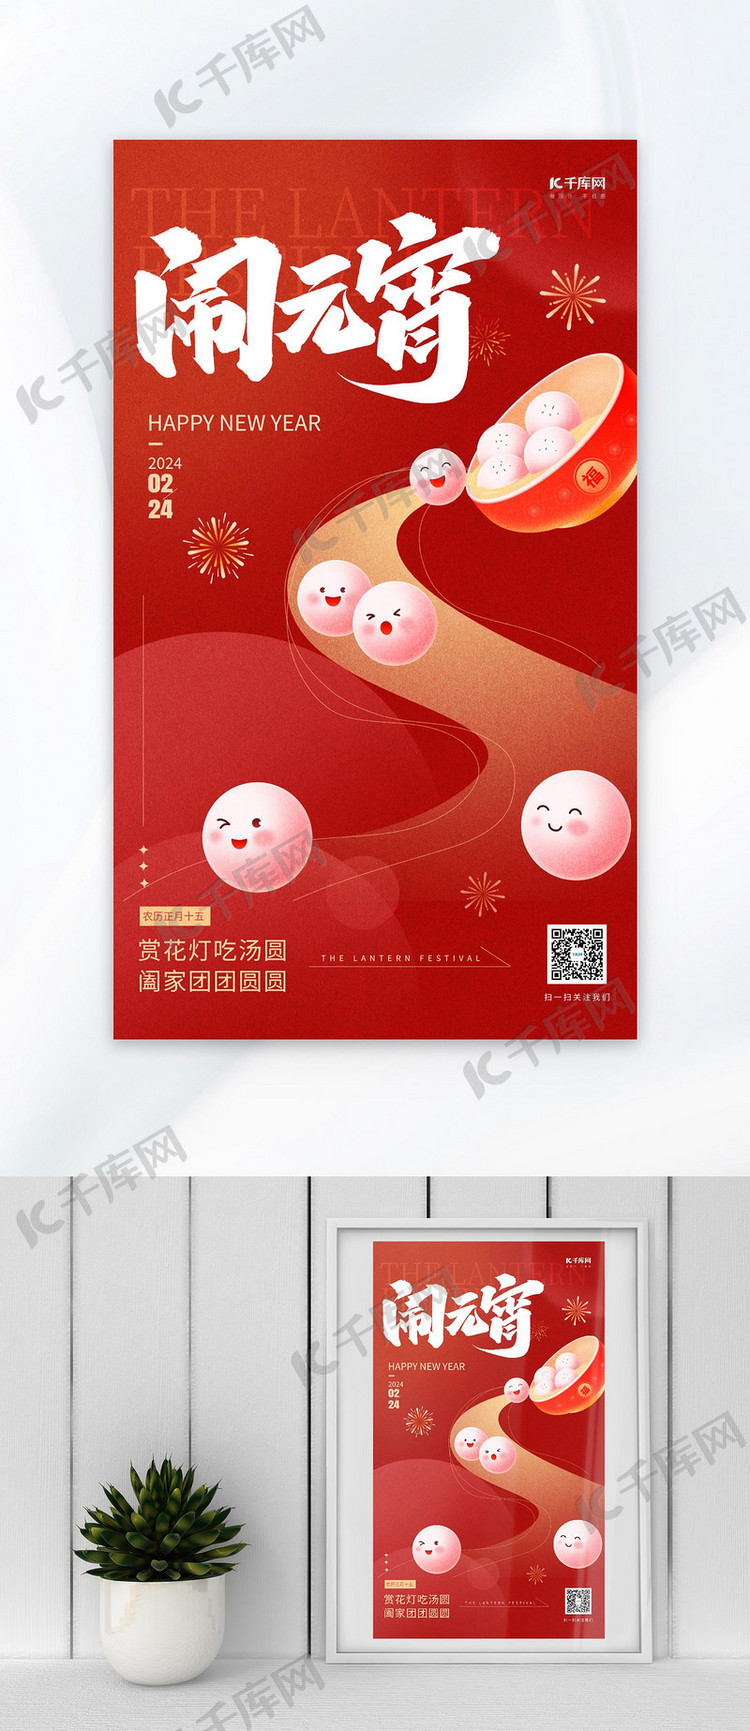 元宵节问候祝福红色插画风广告宣传海报创意海报